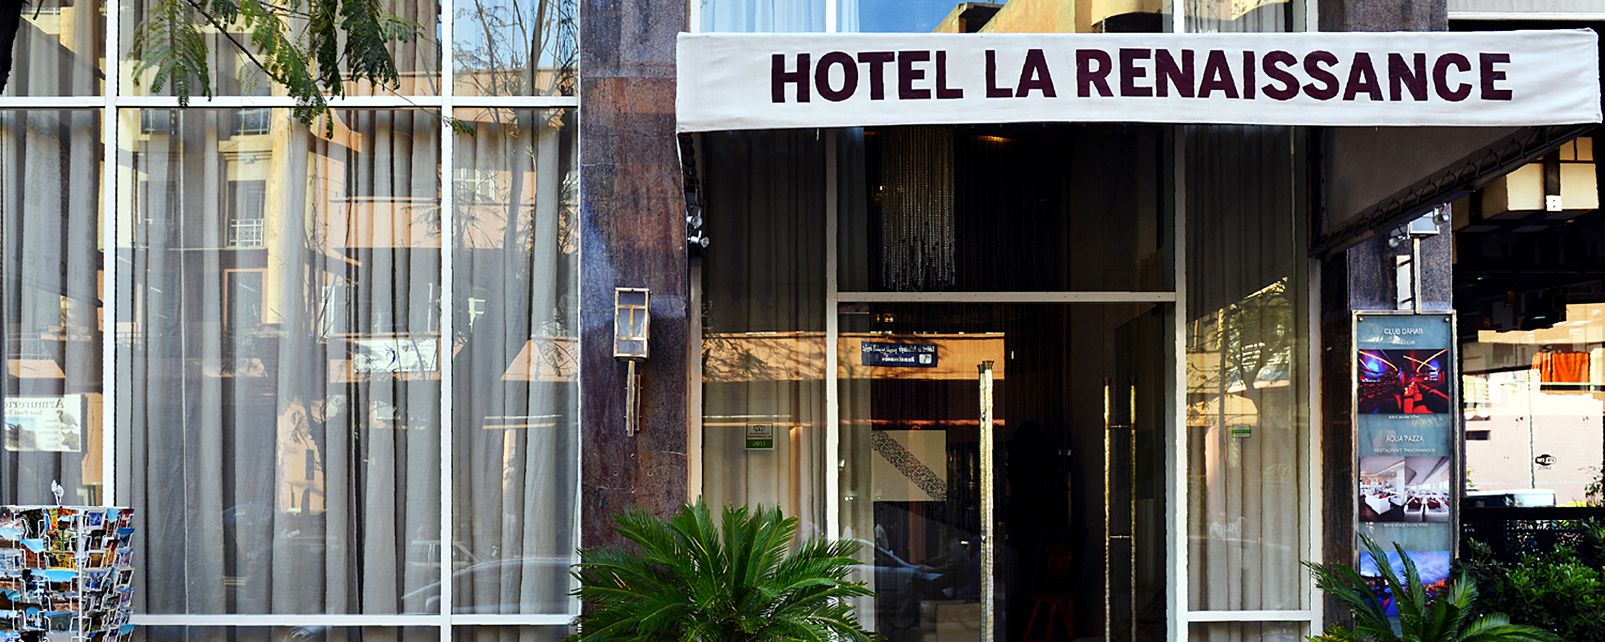 Hotel La Renaissance